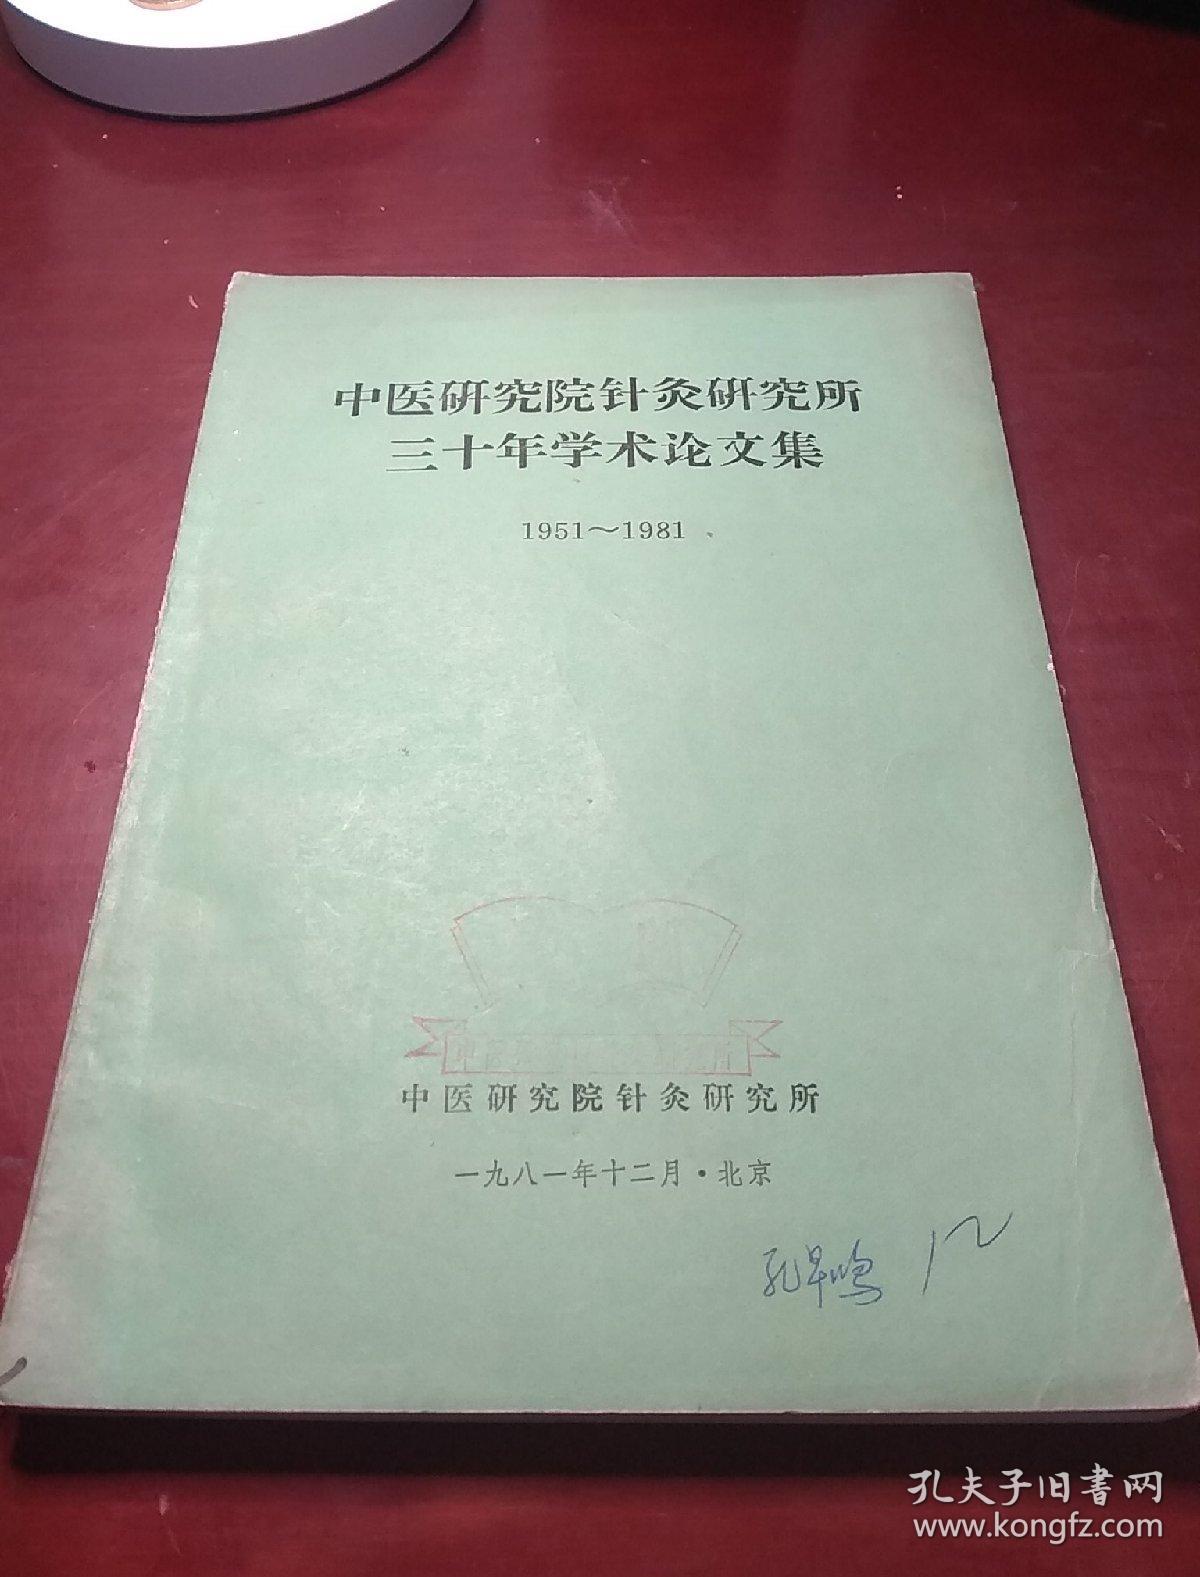 中医研究院针灸研究所三十年学术论文集 1951-1981